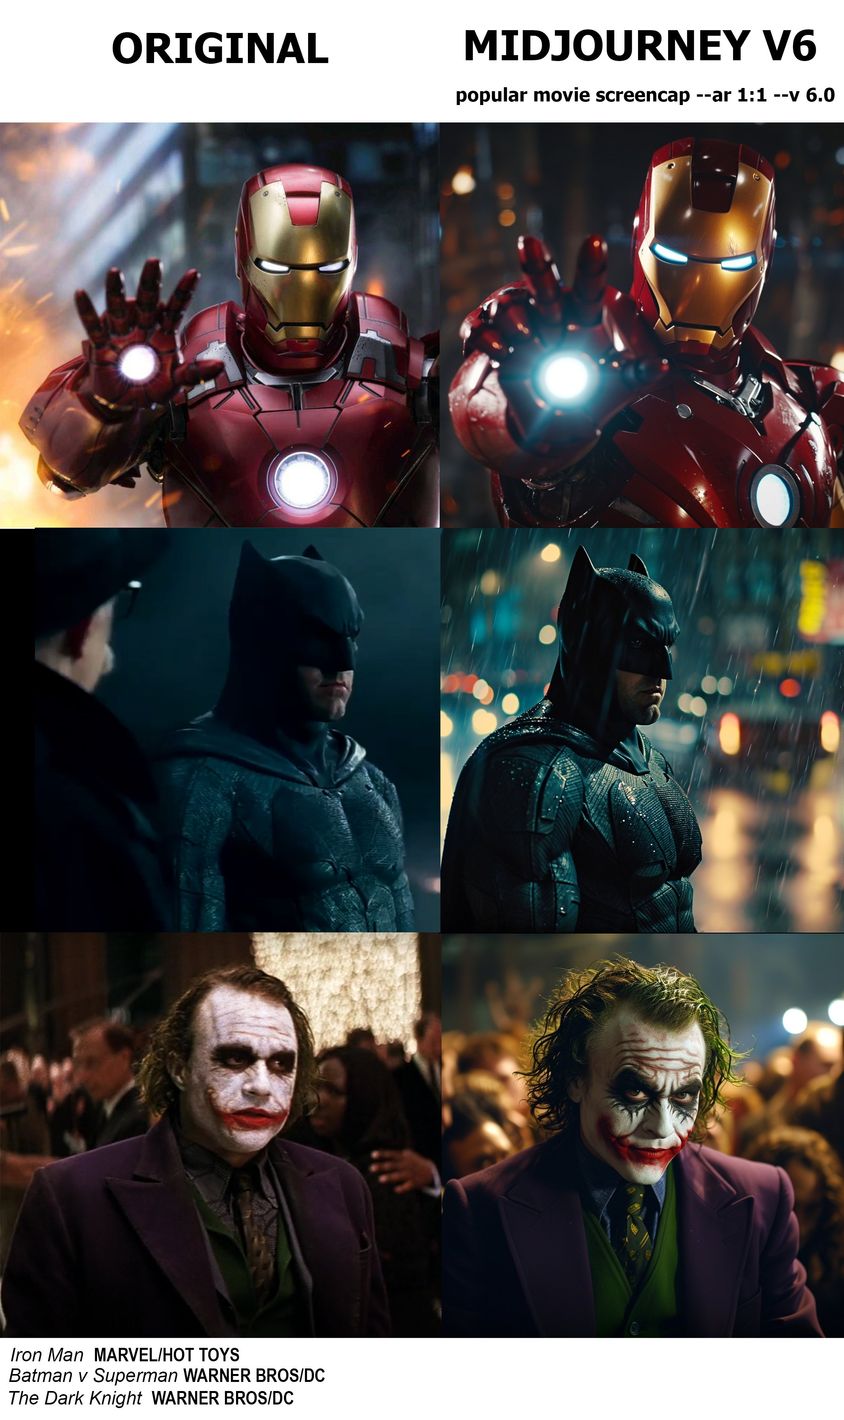 三组并排图片展示了钢铁侠、蝙蝠侠和小丑。左侧是电影中的静态画面，右侧是由 Midjourney 创建的相应图片。